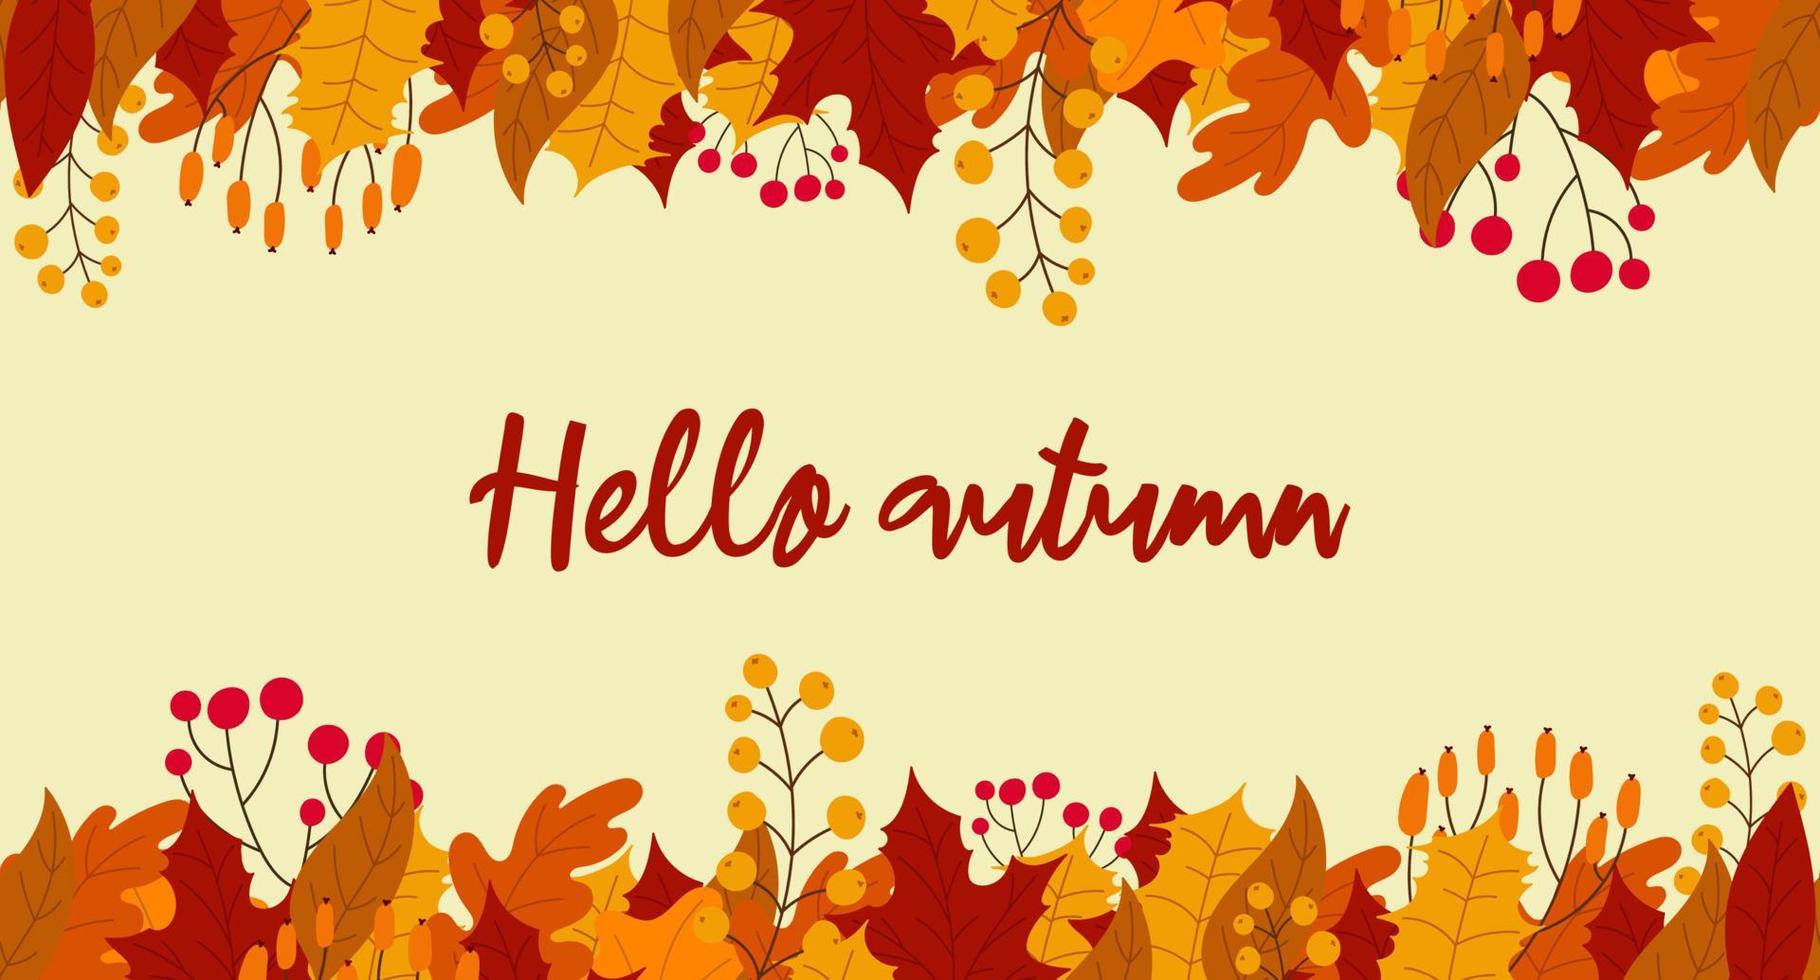 bonjour carte postale de lettrage d'automne. fond avec des feuilles et des baies à l'automne. bonjour bannière transparente d'automne avec des feuilles orange et rouges. illustration vectorielle vecteur